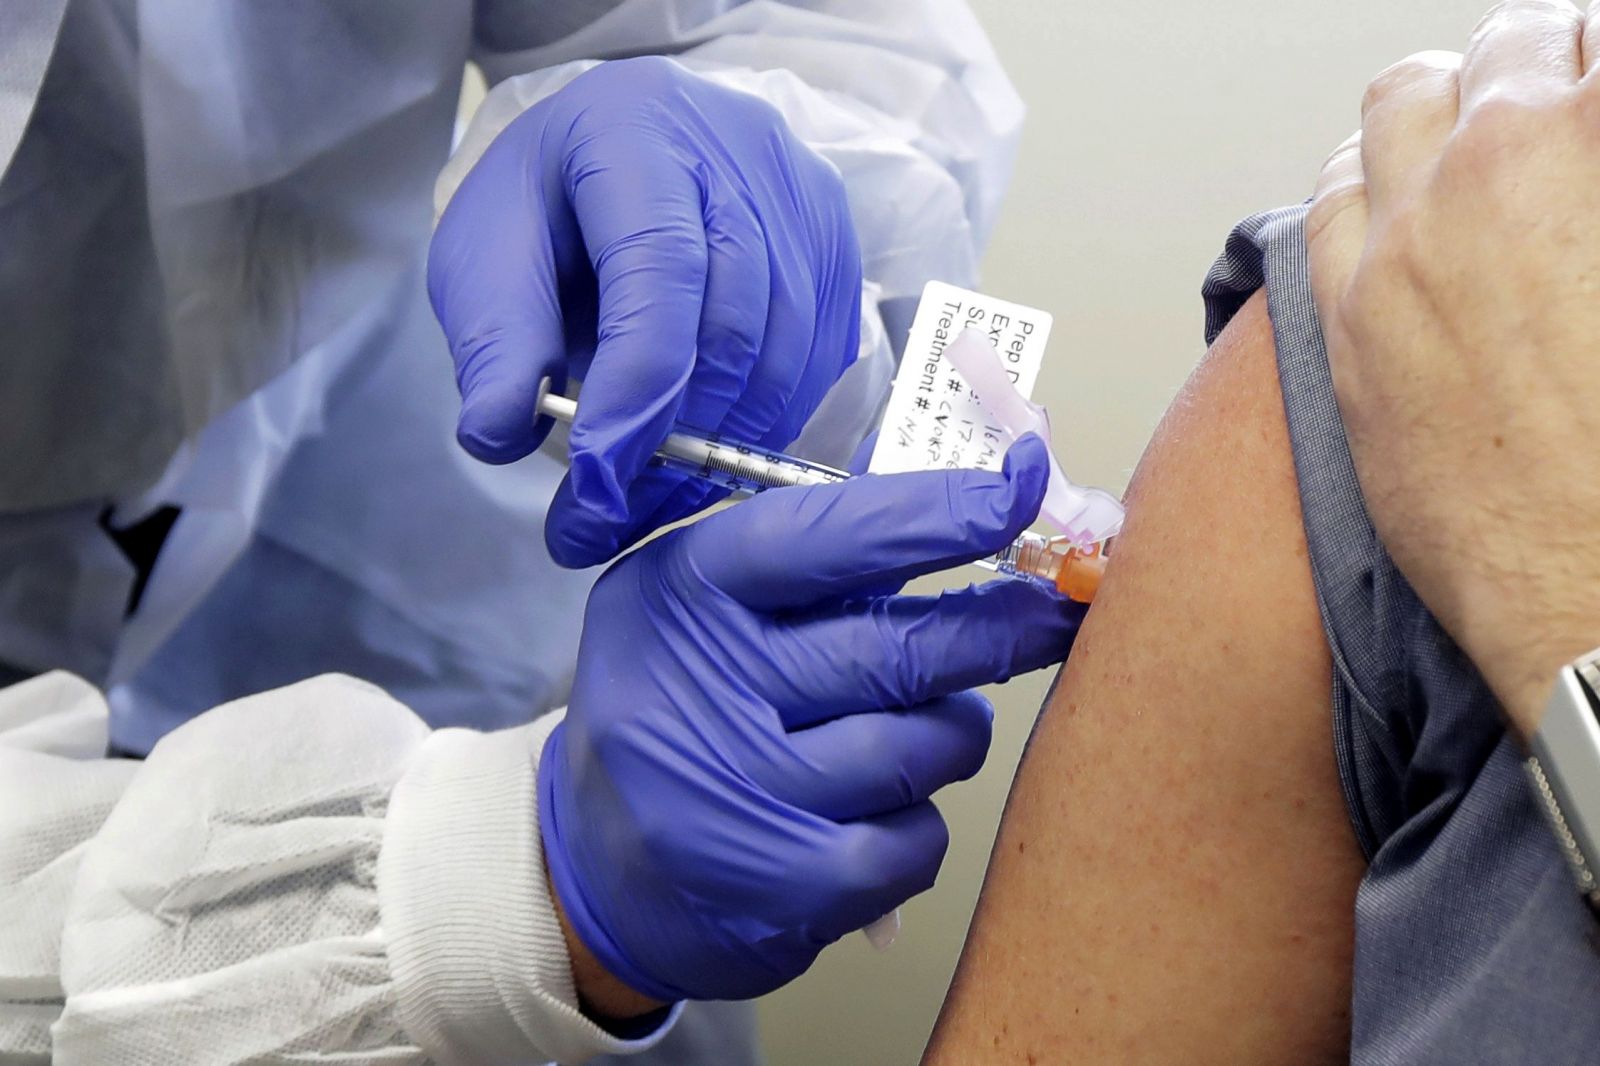 Dobrovoľník Neal Browning dostáva ako druhý v poradí vakcínu proti novému koronavírusu počas klinickej skúšky vakcíny, ktorá sa začala vo výskumnom ústave v americkom meste Seattle v pondelok 16. marca 2020.